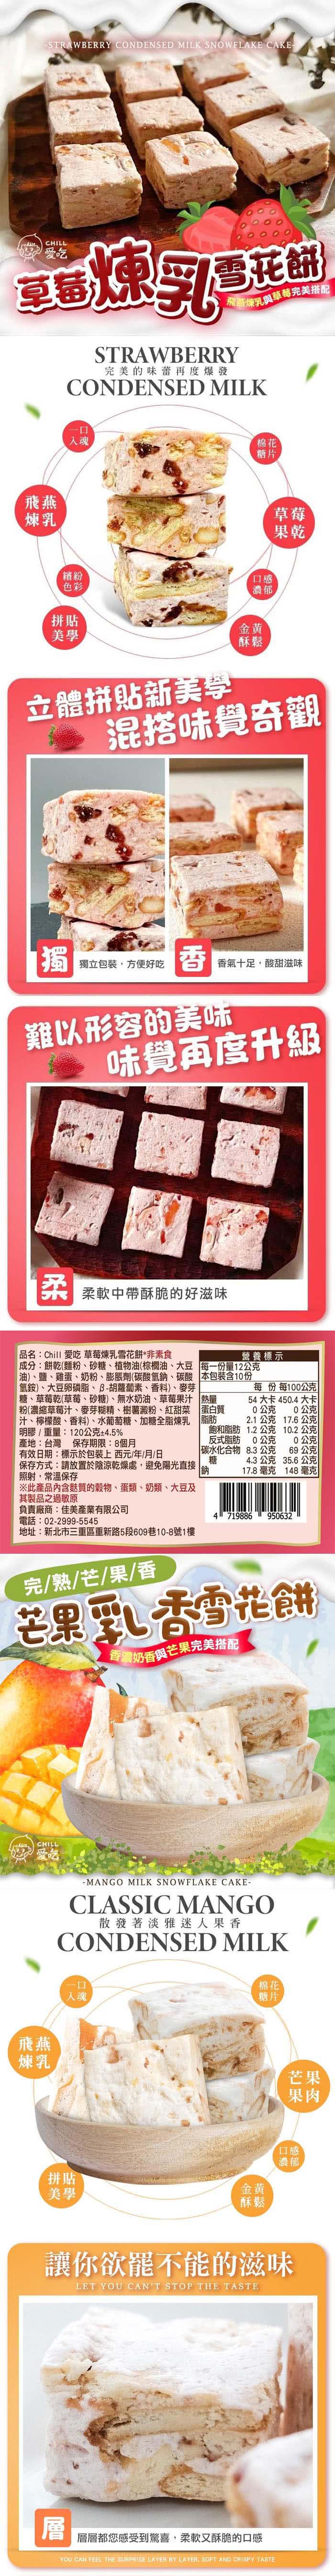 CHILL愛吃 繽紛水果雪花餅x6盒(120g/盒-草莓/芒